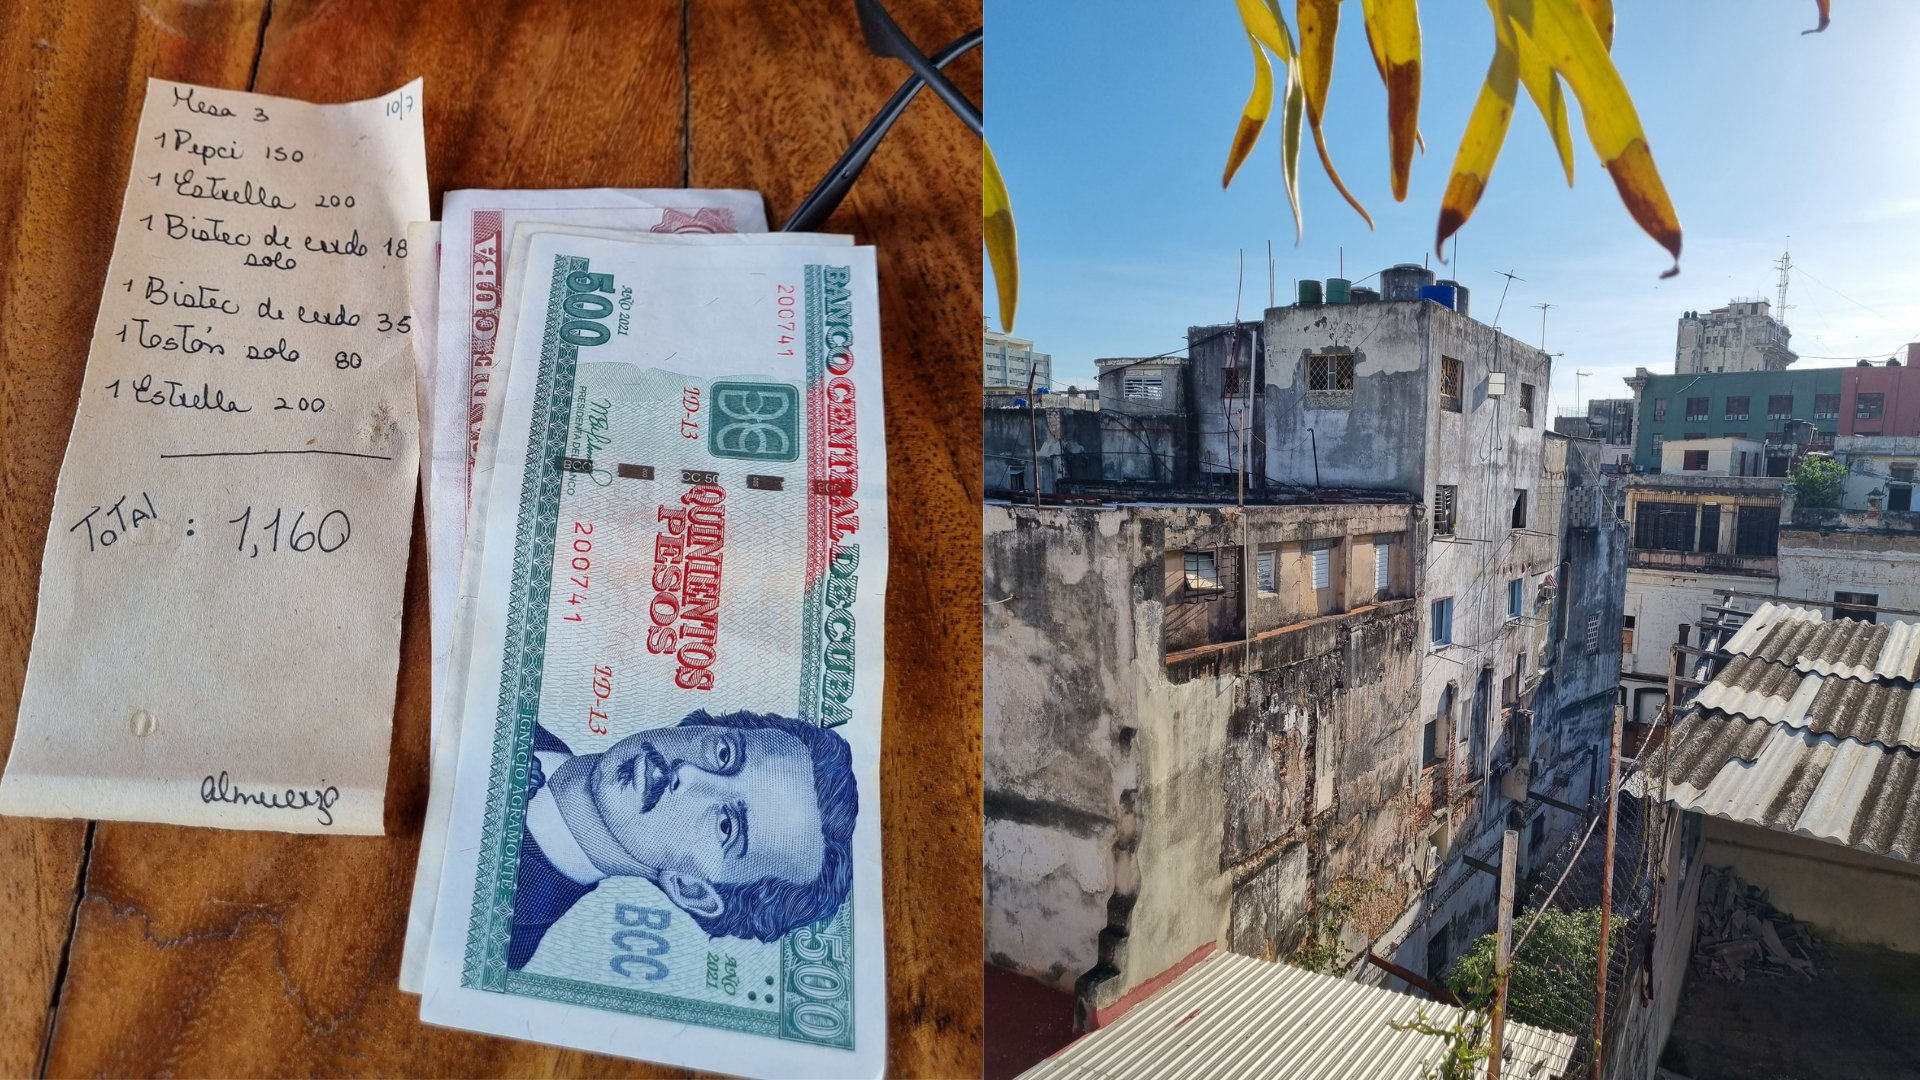 Turista cataloga a Cuba como “un país destrozado por el comunismo”